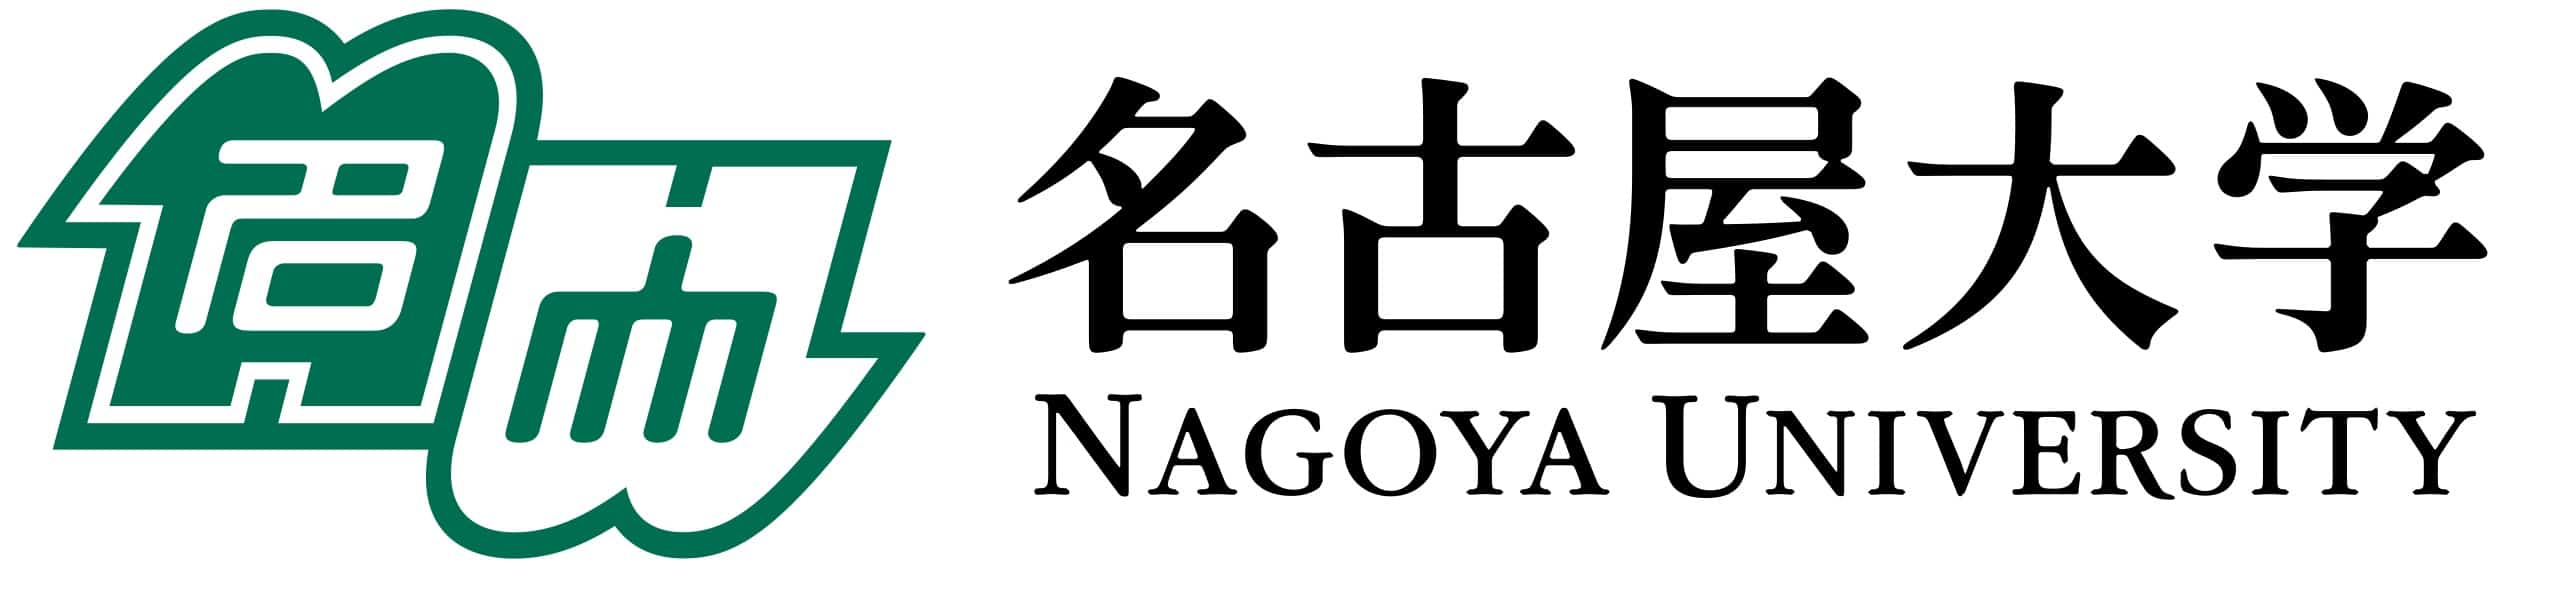 Nagoya University 名古屋大学